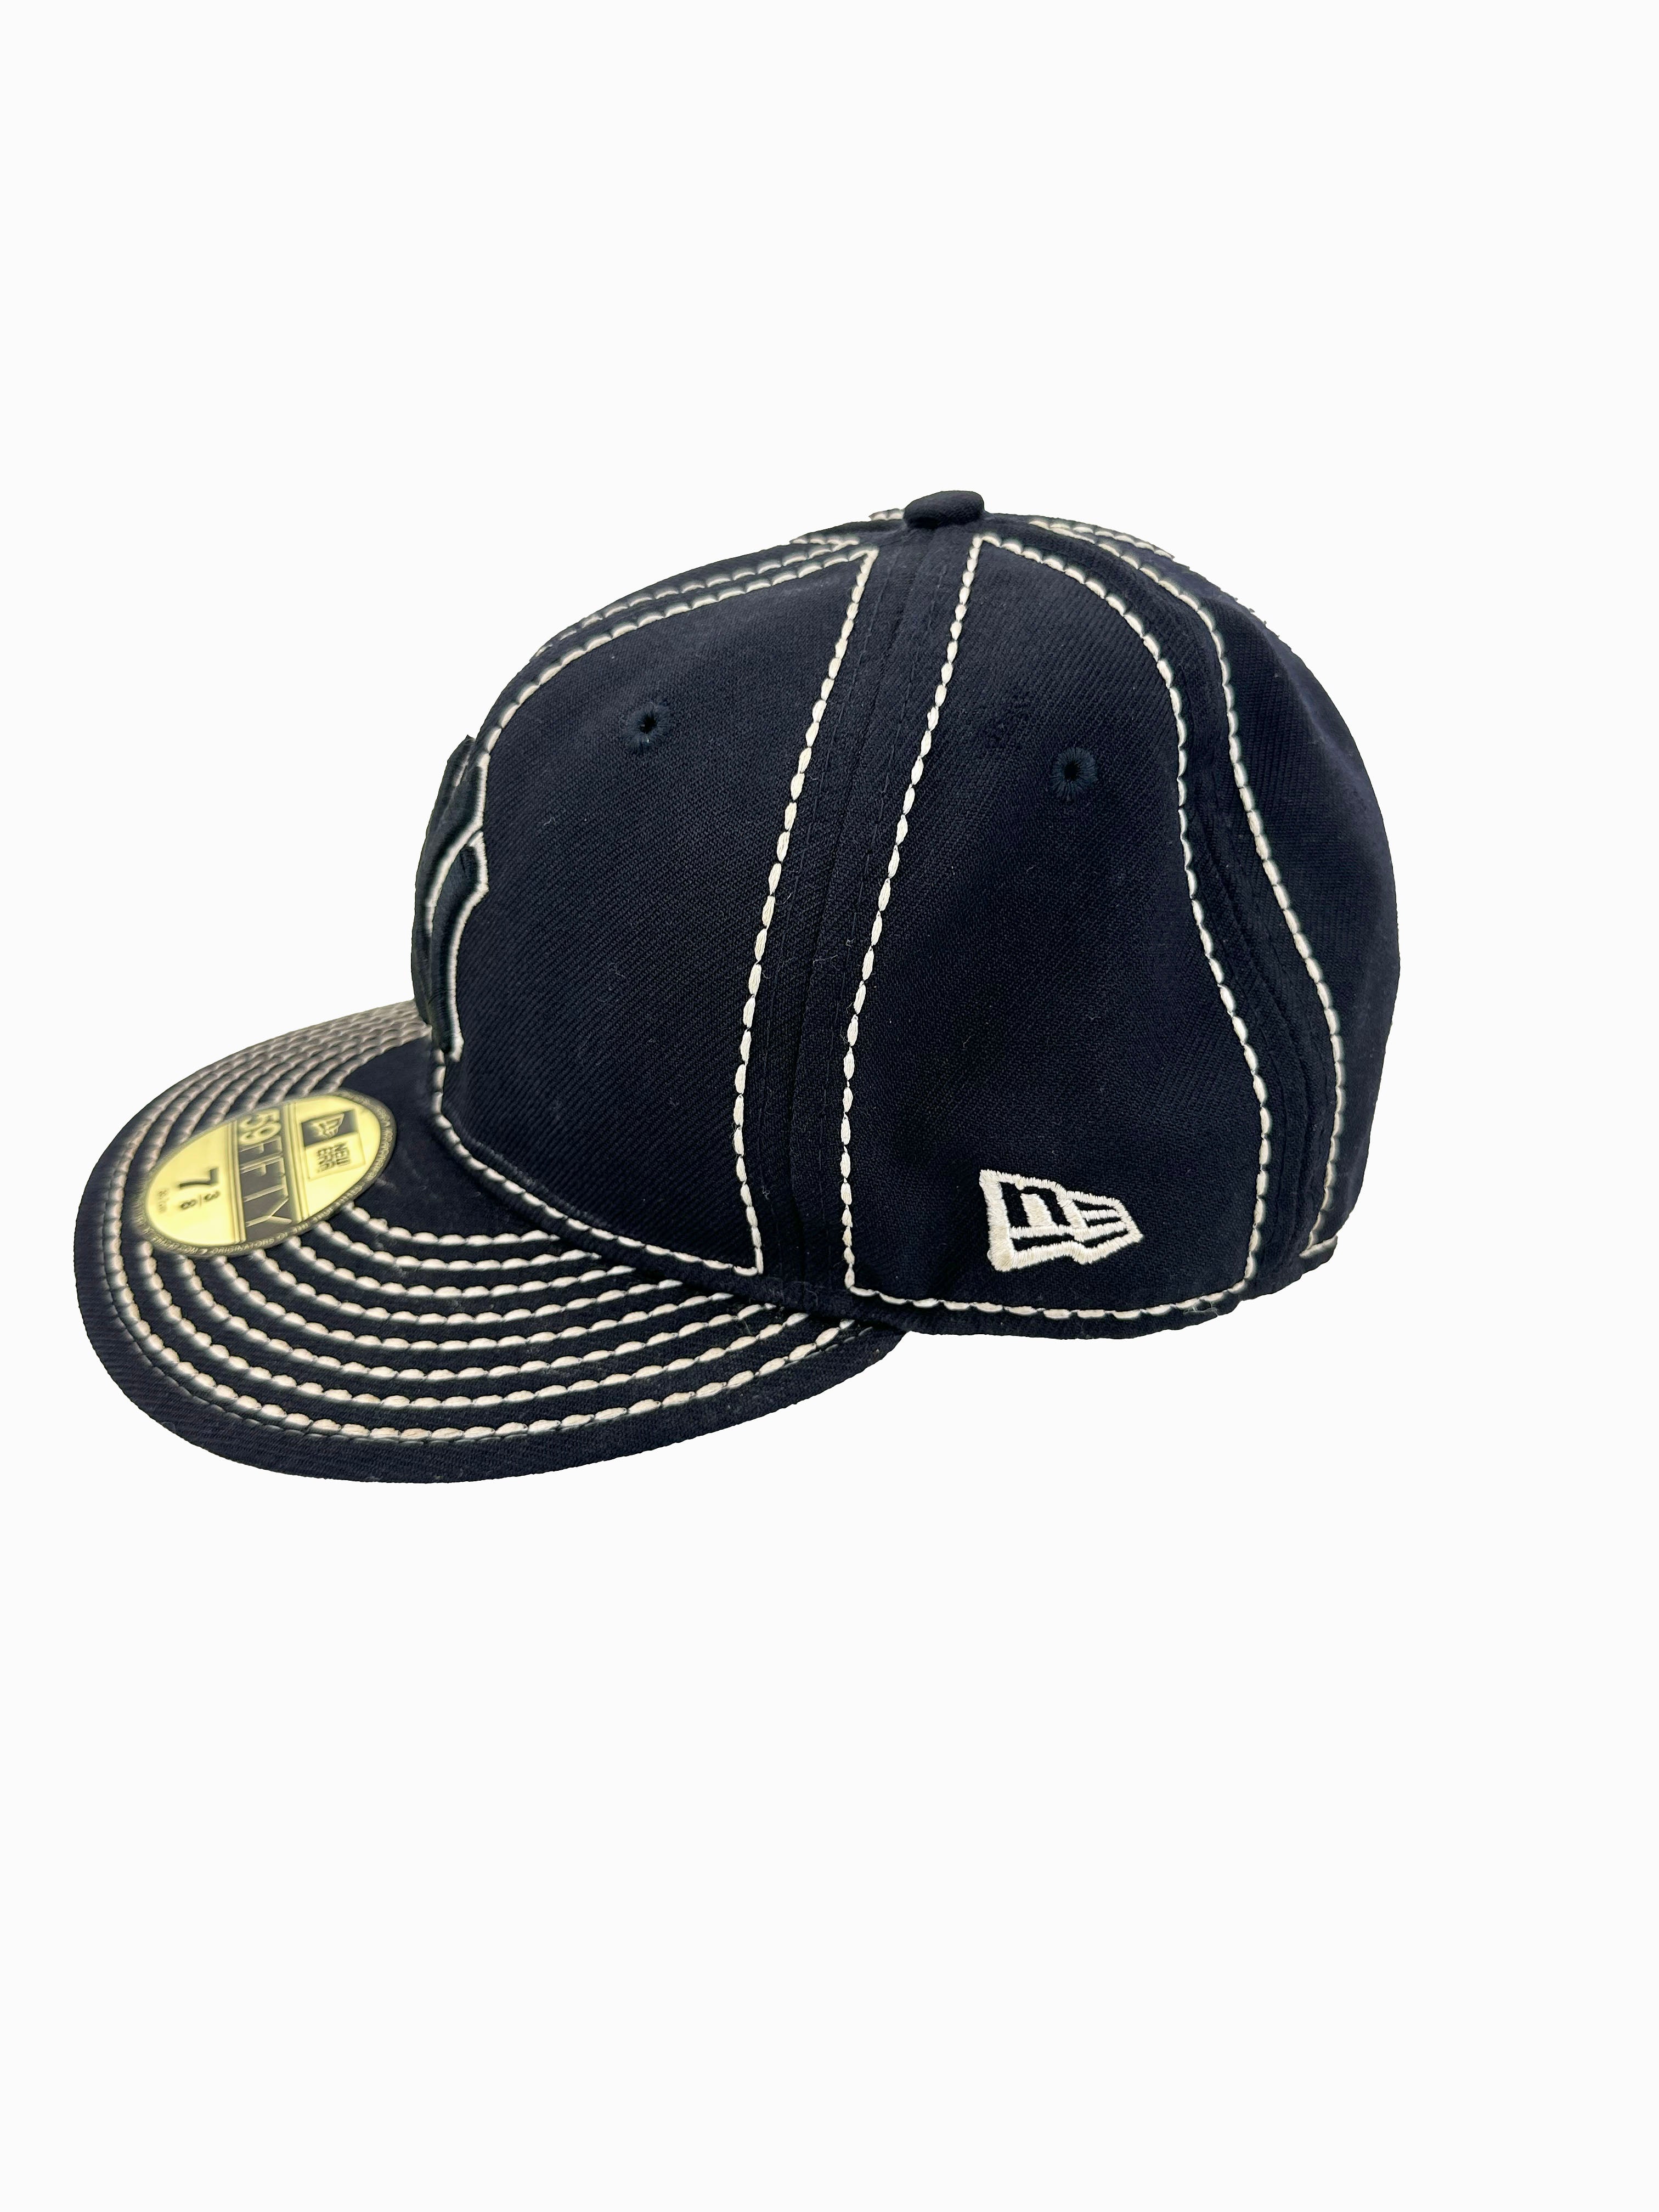 New Era Navy White Stitch Hat 00's